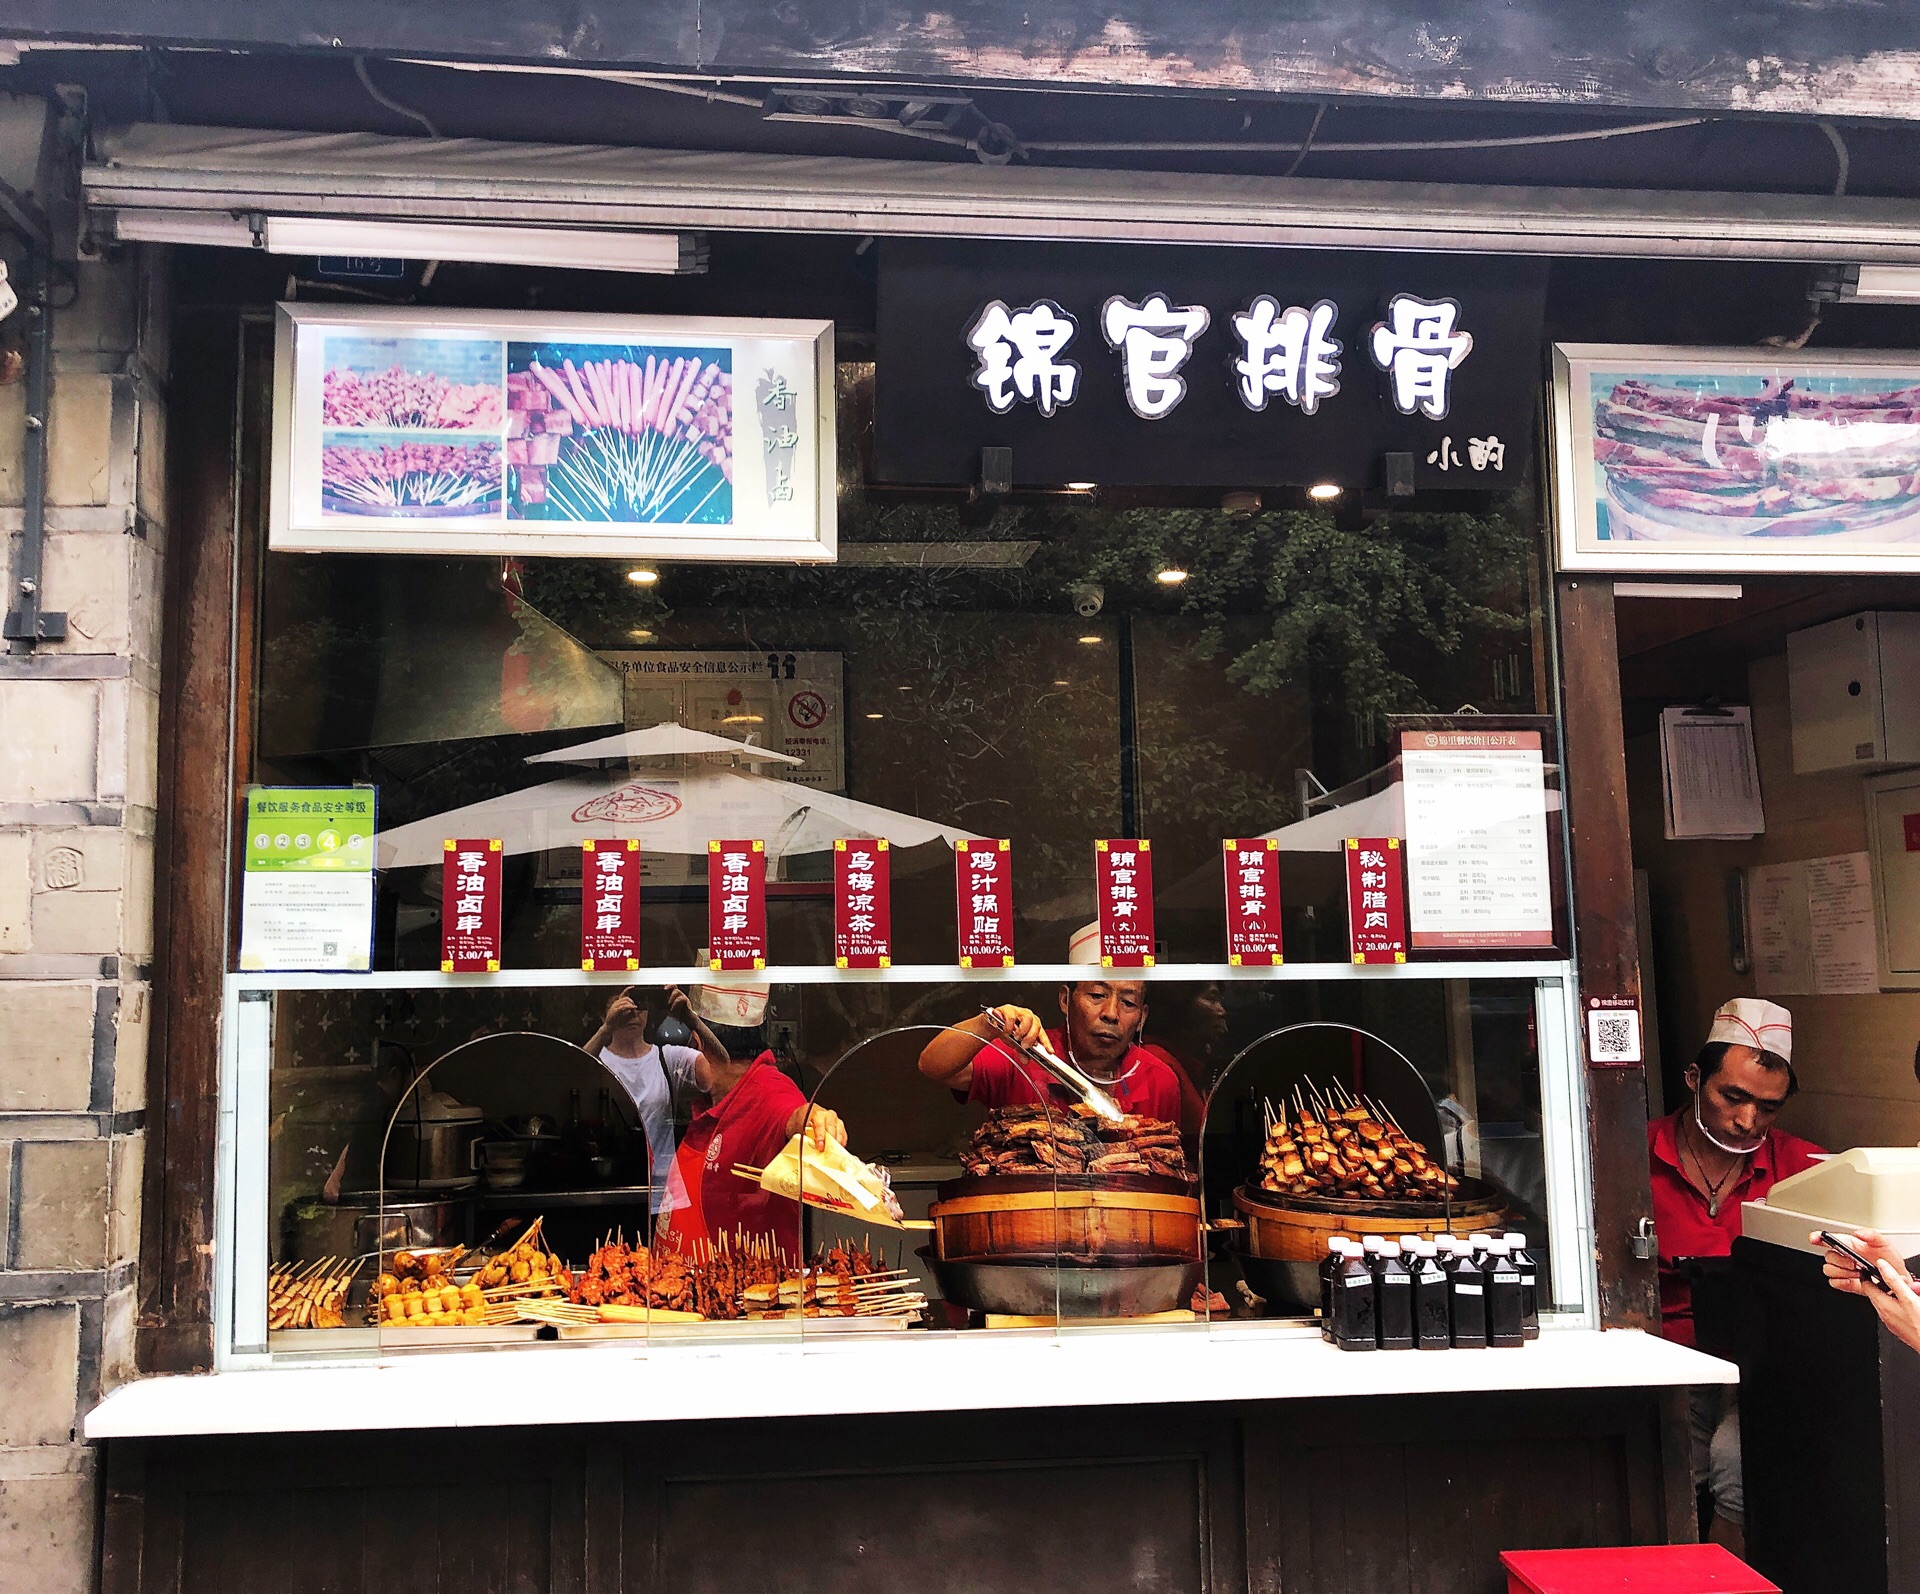 中国小吃街图片大全-中国小吃街高清图片下载-觅知网